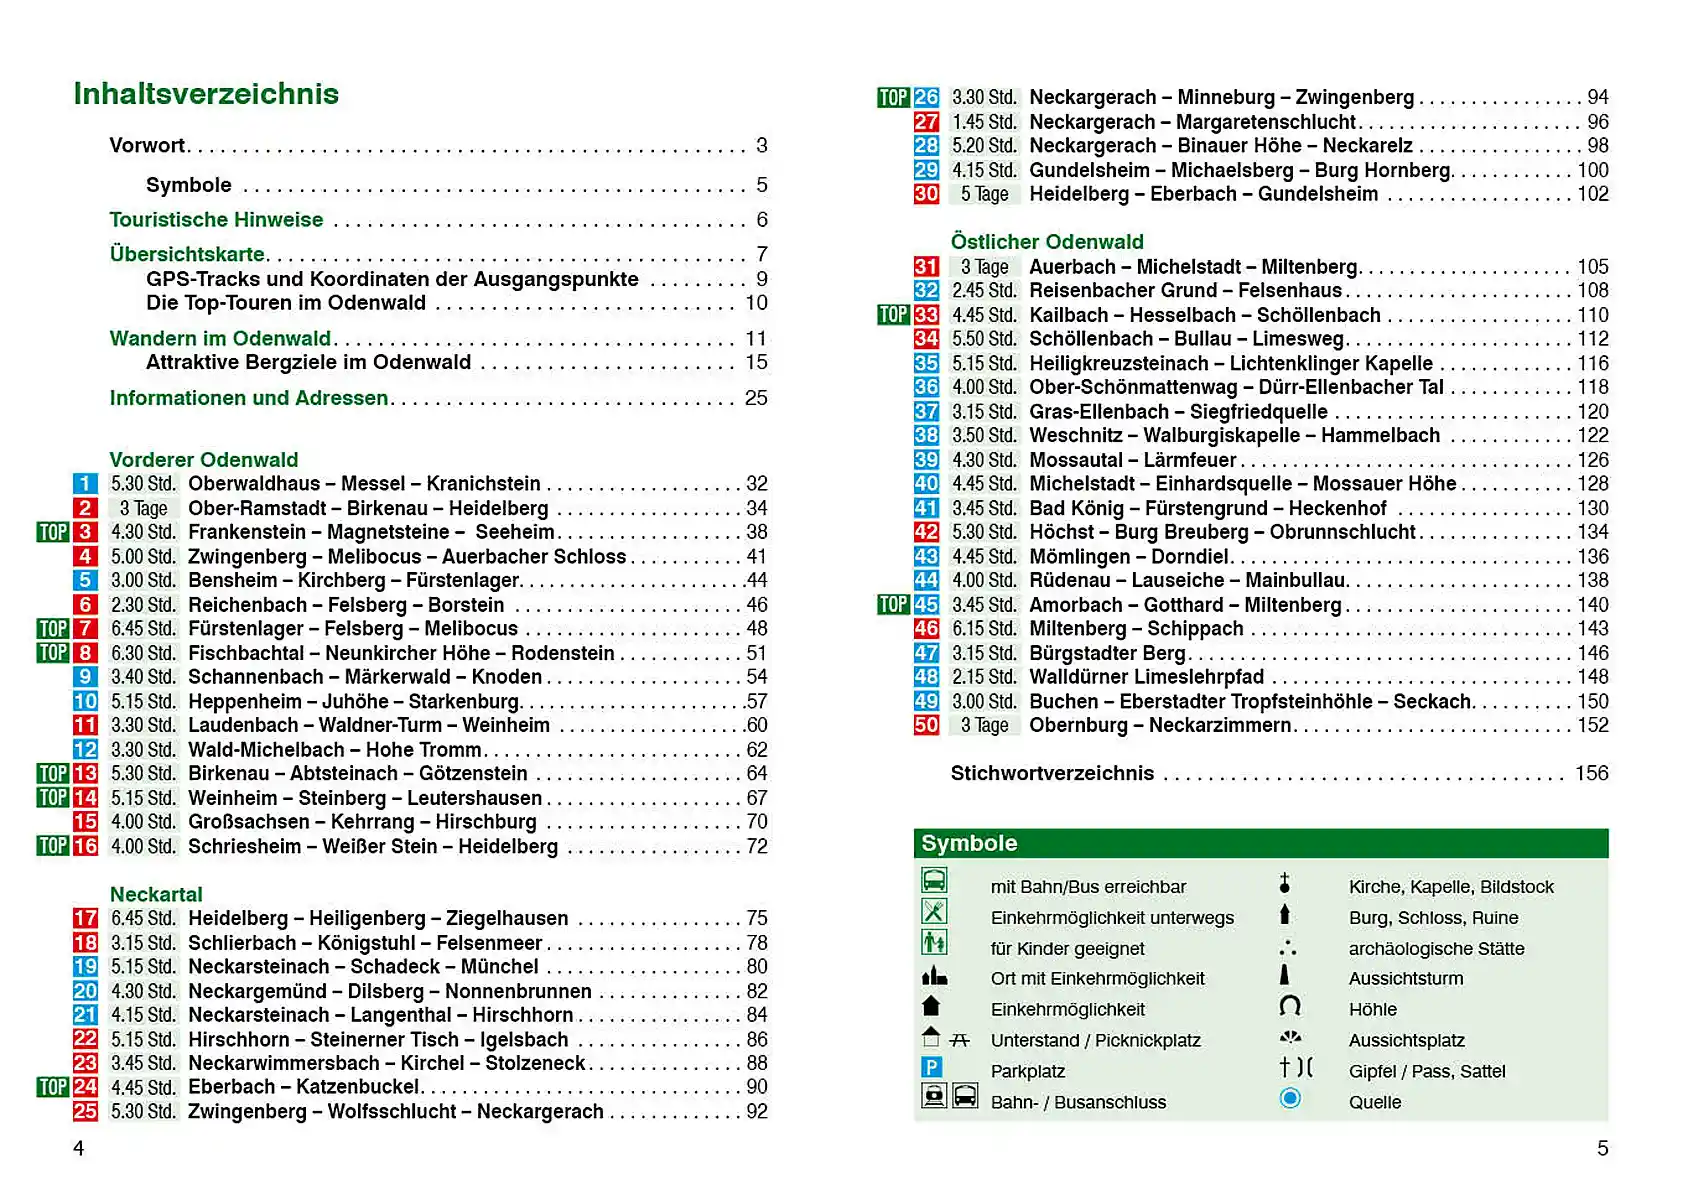 Inhaltsverzeichnis »Wanderfuehrer Odenwald«